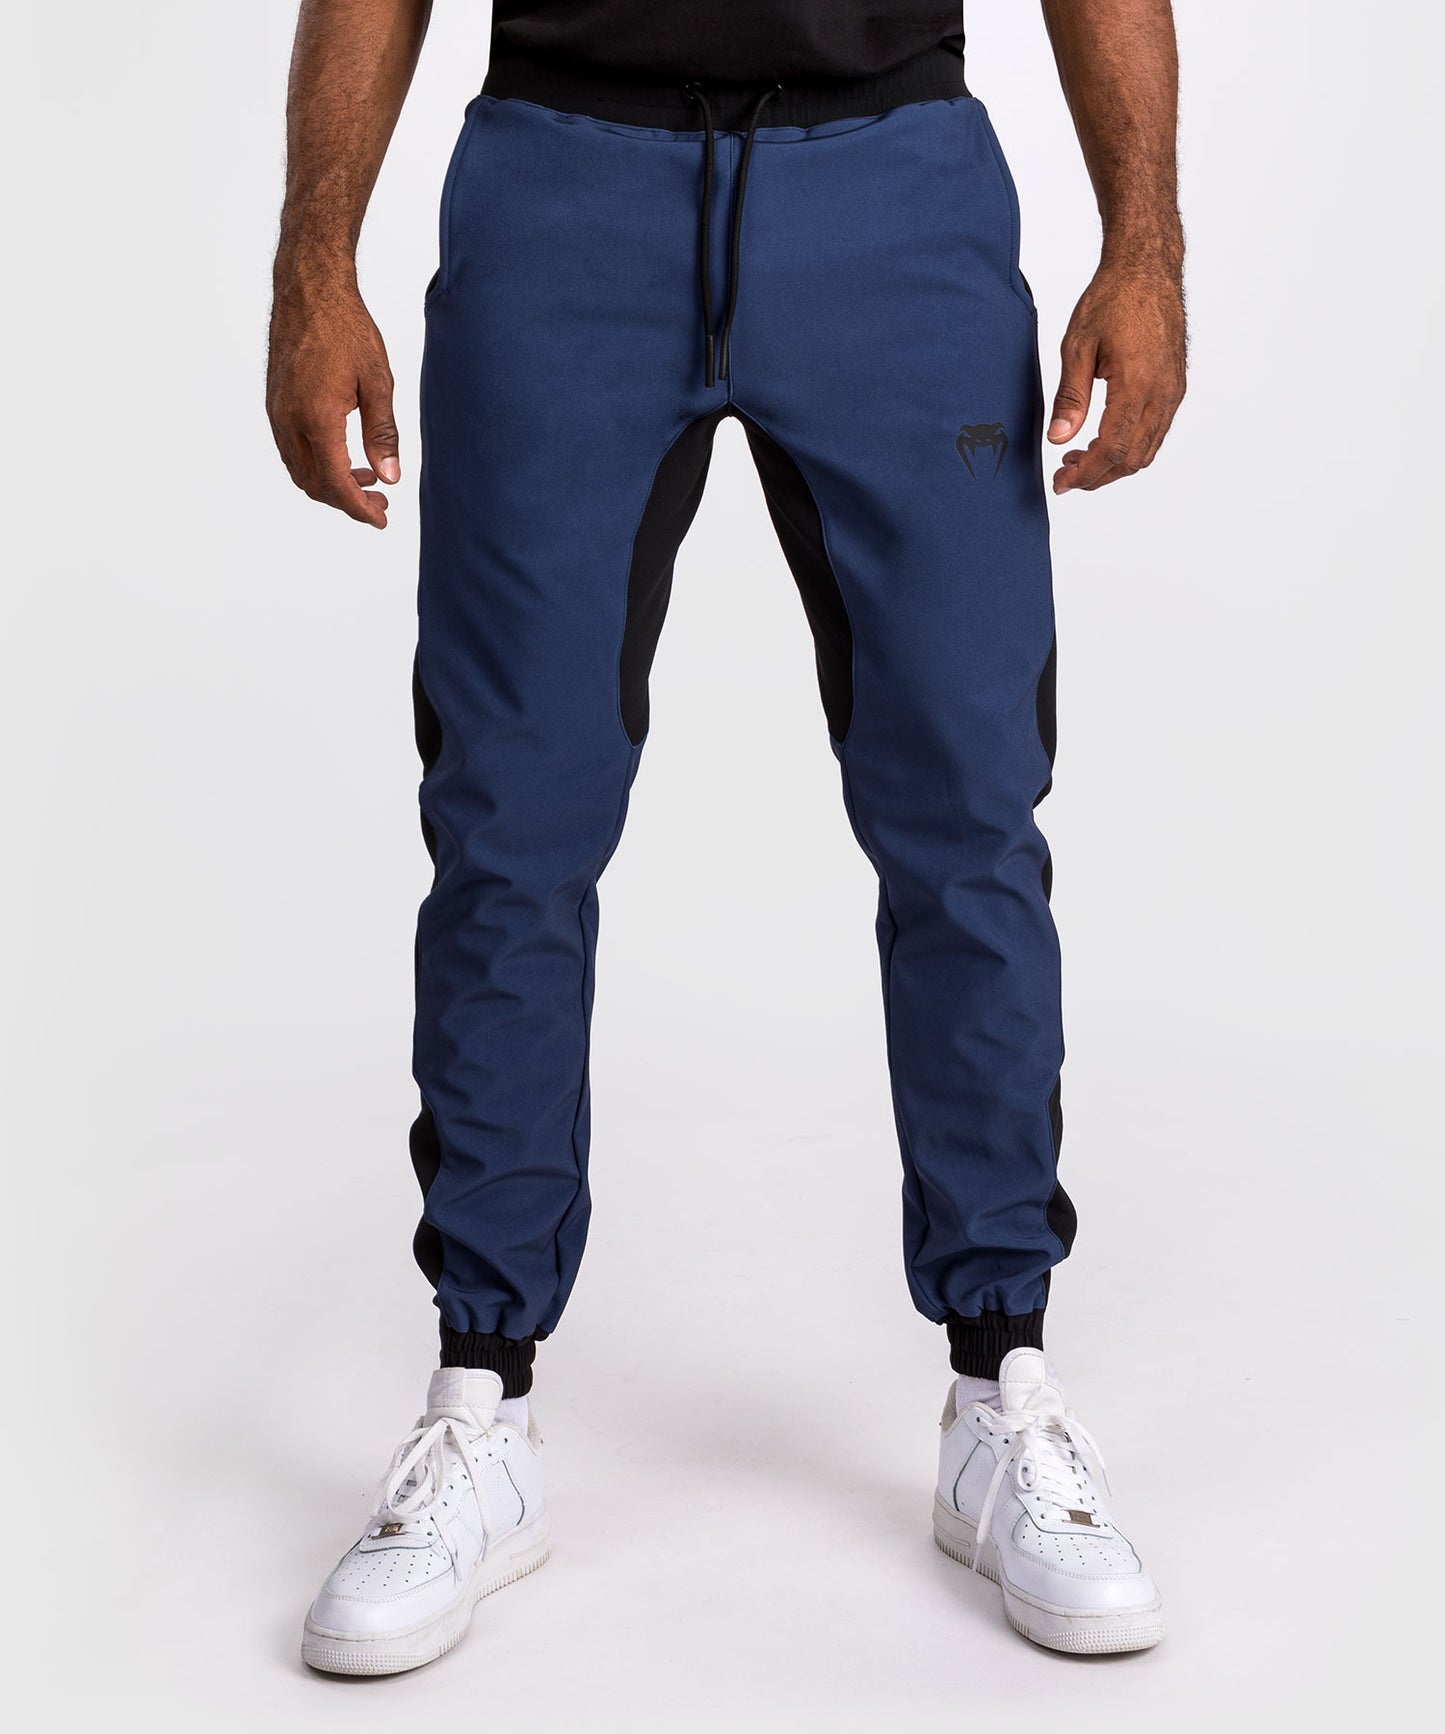 Pantalon de survêtement Venum Sport 05 - Bleu/Jaune